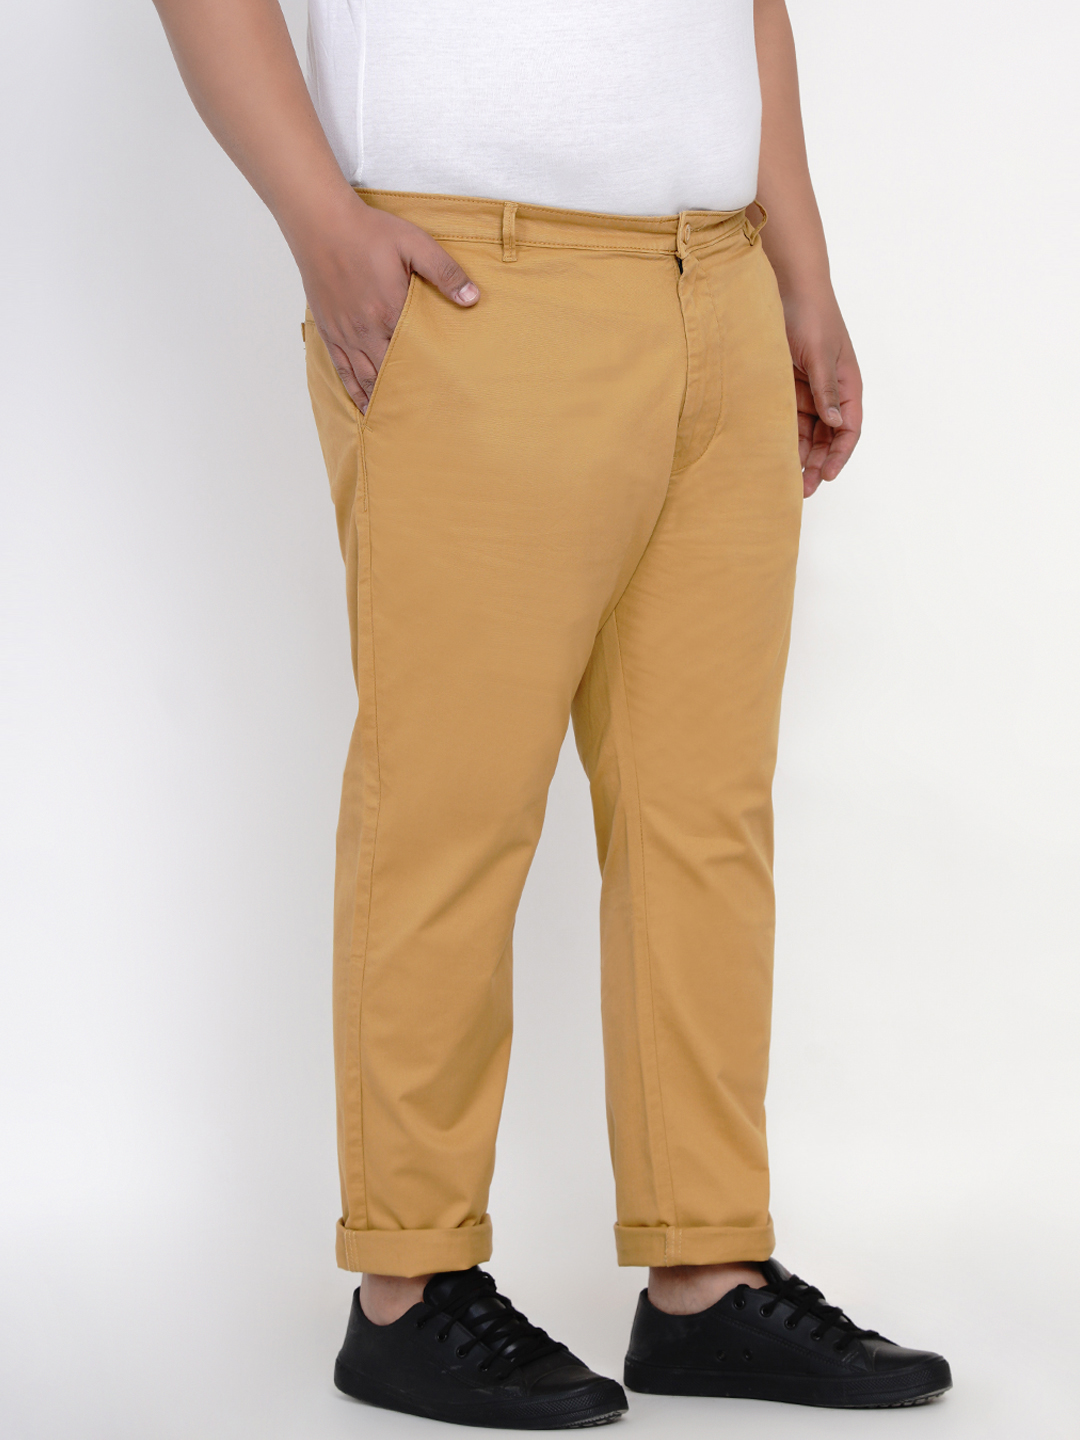 bottomwear/trousers/JPTR2161A/jptr2161a-5.jpg